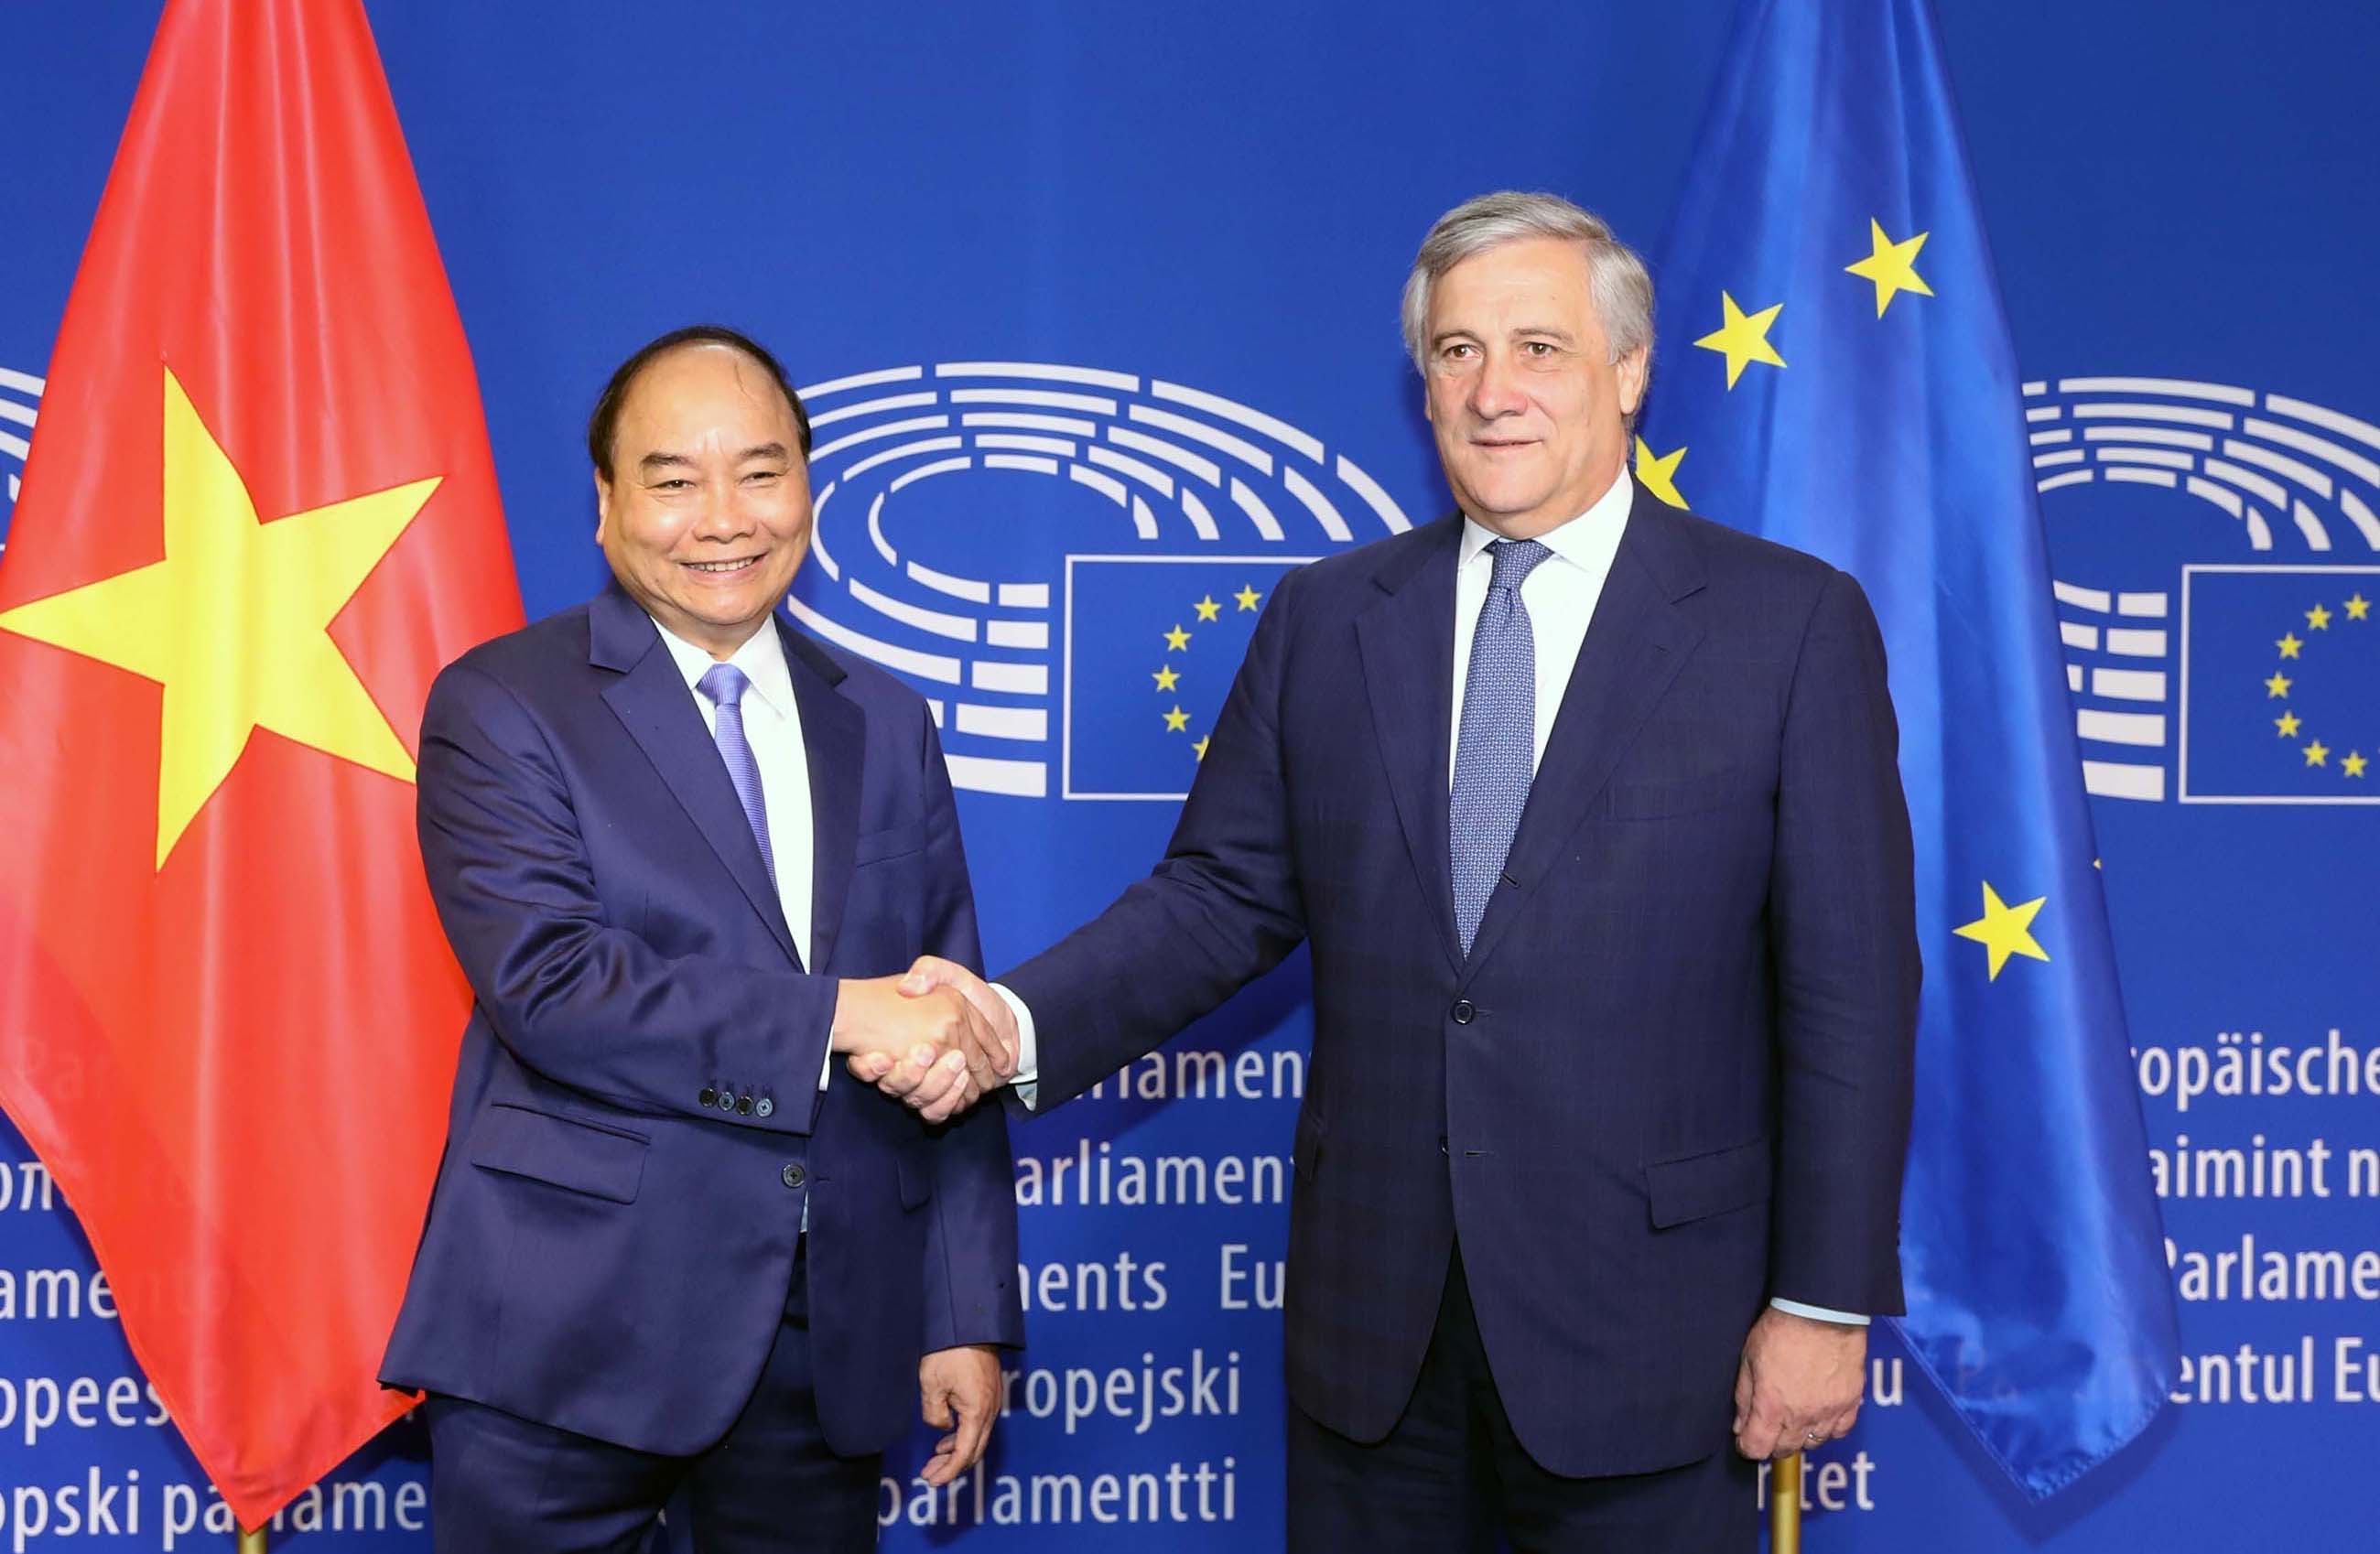 Quan hệ Việt Nam - Liên minh châu Âu ngày càng trở nên đặc biệt và thú vị hơn. Hãy khám phá những hoạt động mới nhất và những vấn đề đang được thảo luận giữa hai bên. Cùng tìm hiểu sâu hơn về cơ hội hợp tác và phát triển của Việt Nam trong liên minh châu Âu, và cùng hy vọng rằng sự hợp tác giữa các quốc gia sẽ tiếp tục được nâng cao và mở rộng.